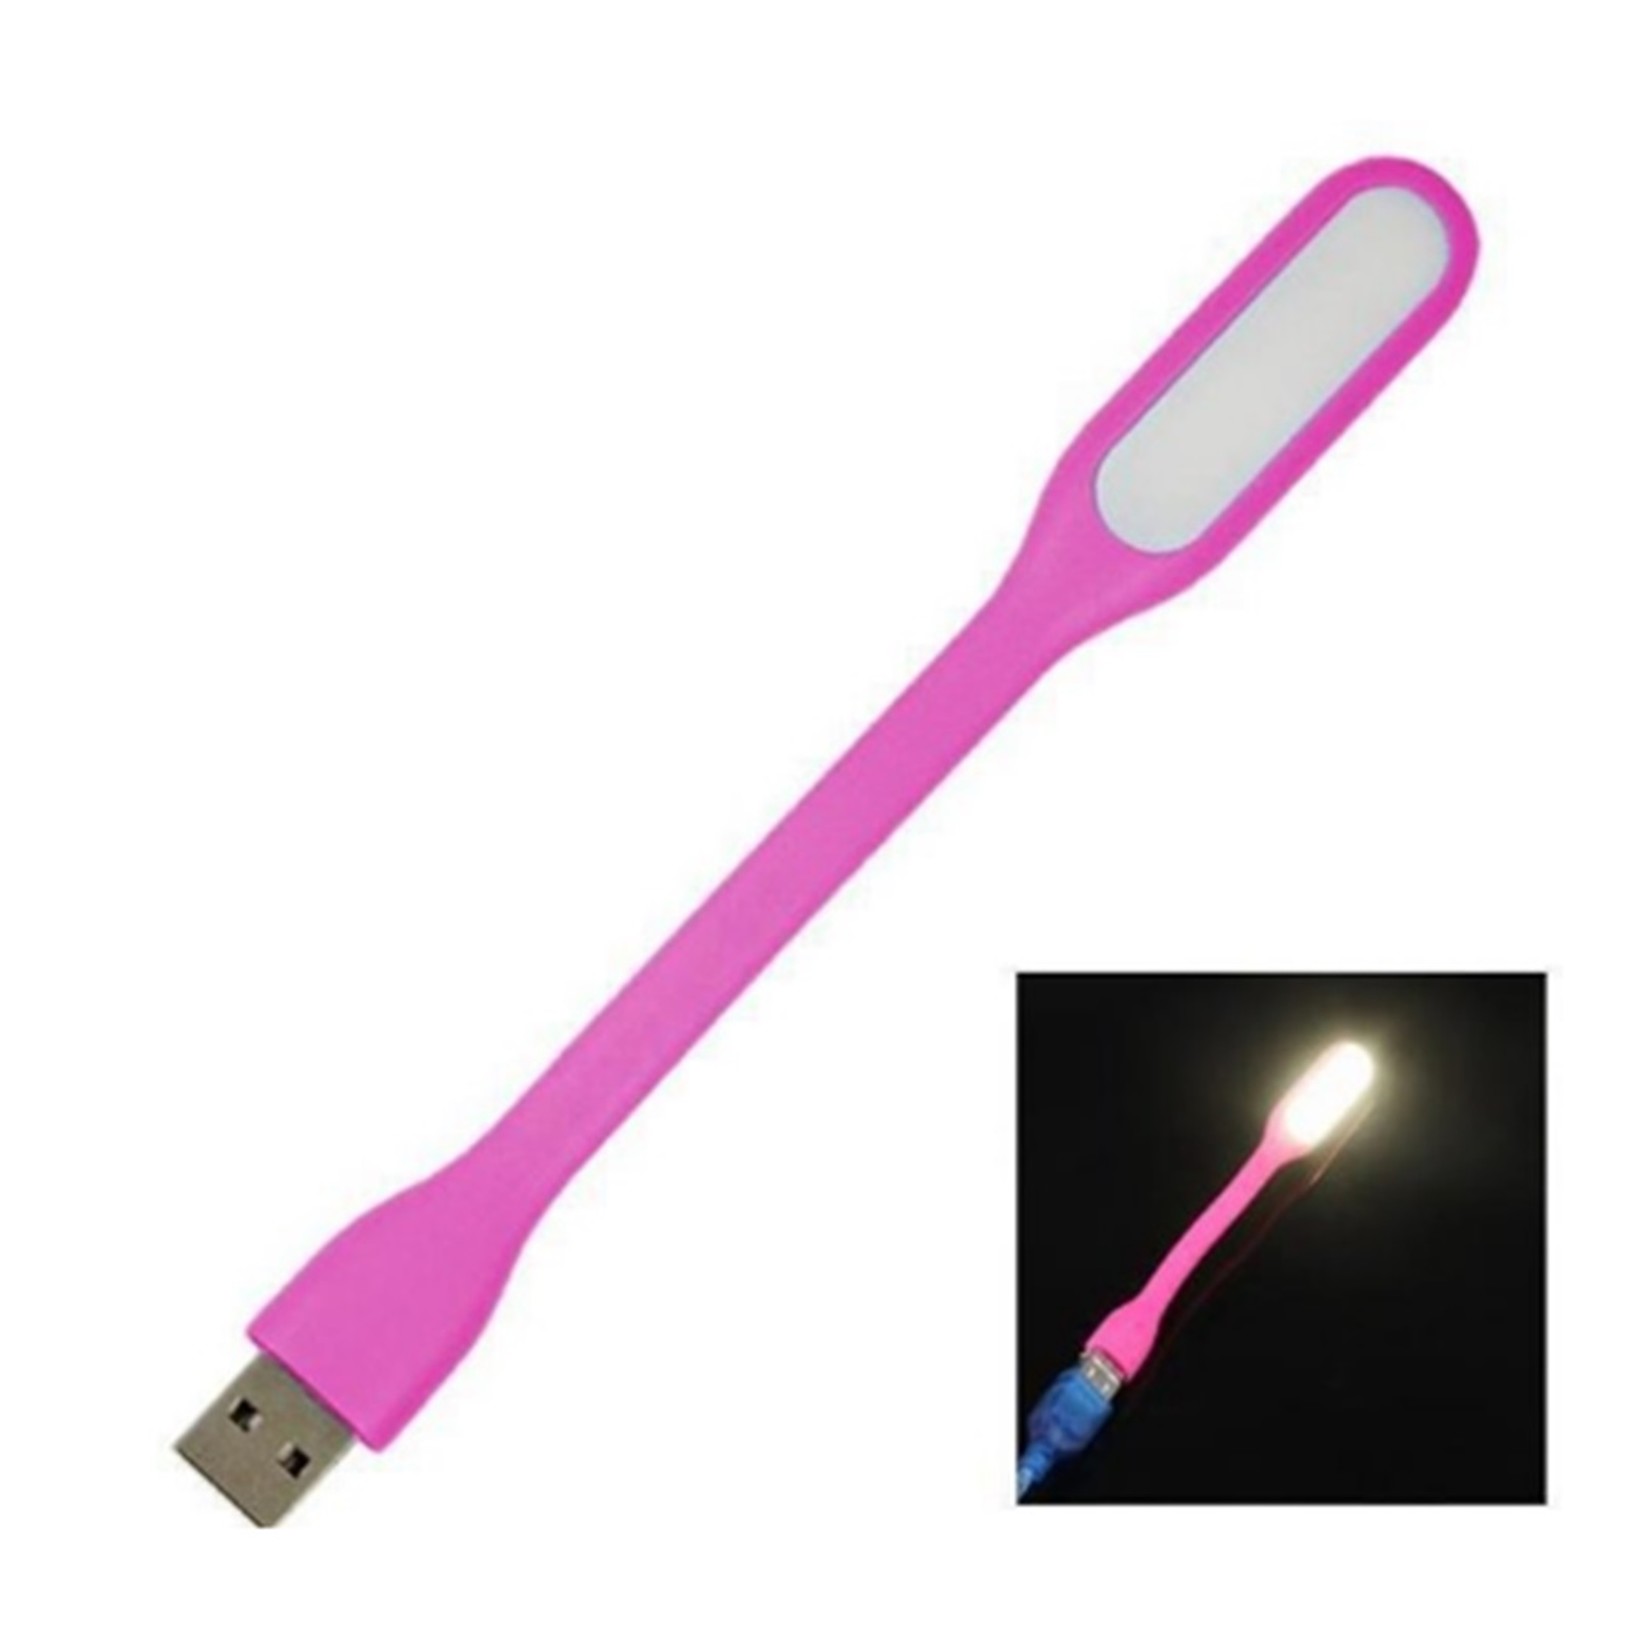 USB LED lamp (wit) buigbaar flexibel voor laptop / notebook / powerbanks zacht licht voor lezen / toetsenbordverlichting Flexibele light Nachtlampje verstelbaar / klein, draagbaar en compact Roze